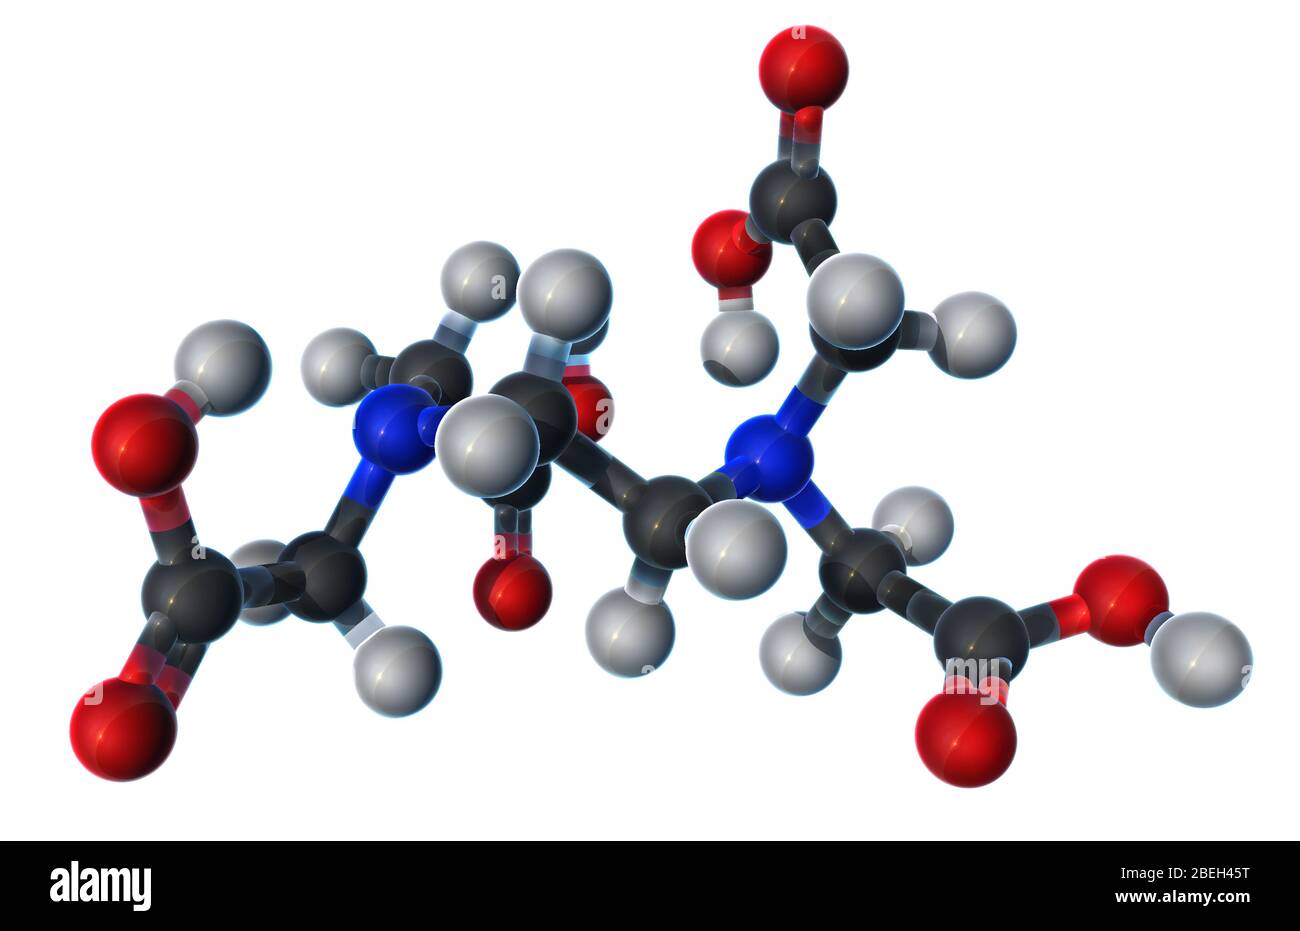 Ein molekulares Modell der Ethylendiaminetetraessigsäure (EDTA), einem farblos, wasserlöslichen Feststoff, der in der Chelattherapie zur Behandlung von Quecksilber und Bleivergiftungen verwendet wird. EDTA wurde auch als Antioxidans und Lebensmittelkonservierungsmittel verwendet und kann auch in Körperpflegeprodukten und saubereren Produkten gefunden werden. Atome sind dunkelgrau (Kohlenstoff), hellgrau (Wasserstoff), rot (Sauerstoff) und blau (Stickstoff). Stockfoto